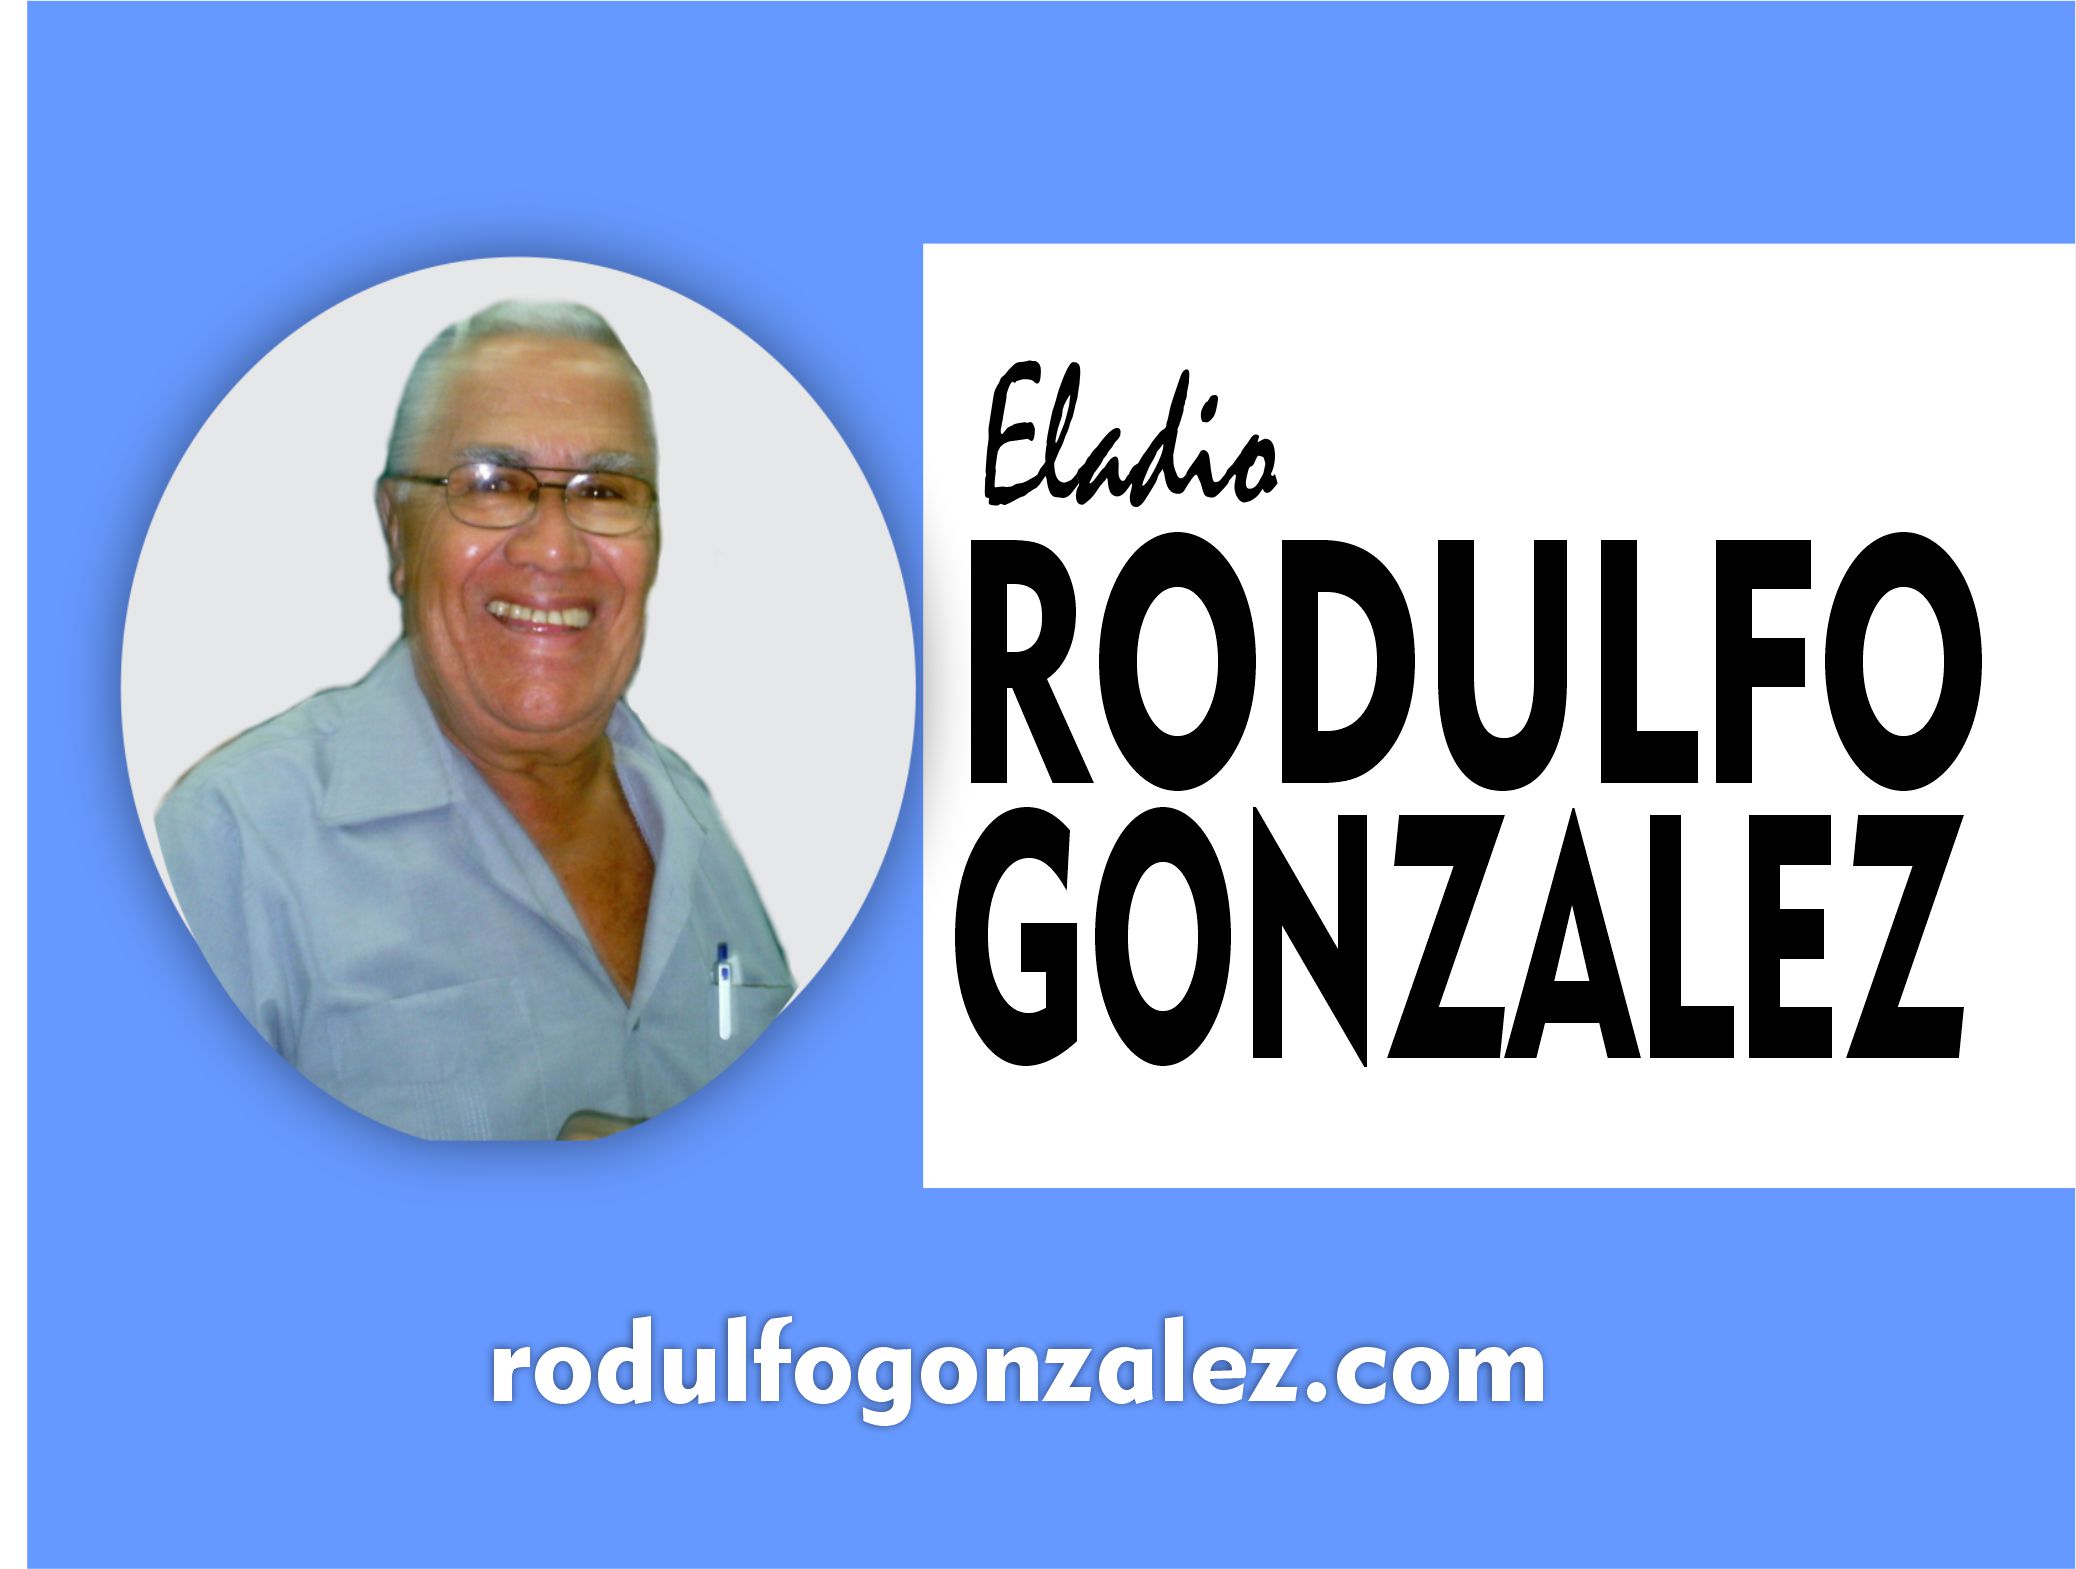 Eladio Rodulfo Gonzalez Escritor Venezolano